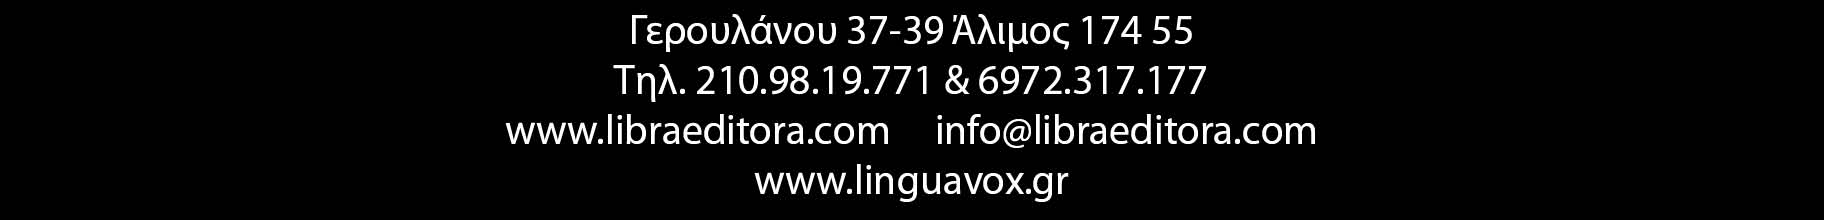 διδακτικό υλικό για την εκμάθηση της πορτογαλικής γλώσσας ψυχαγωγικά τηλεοπτικά προγράμματα βιβλία λεξικά cd dvd κατάλογος